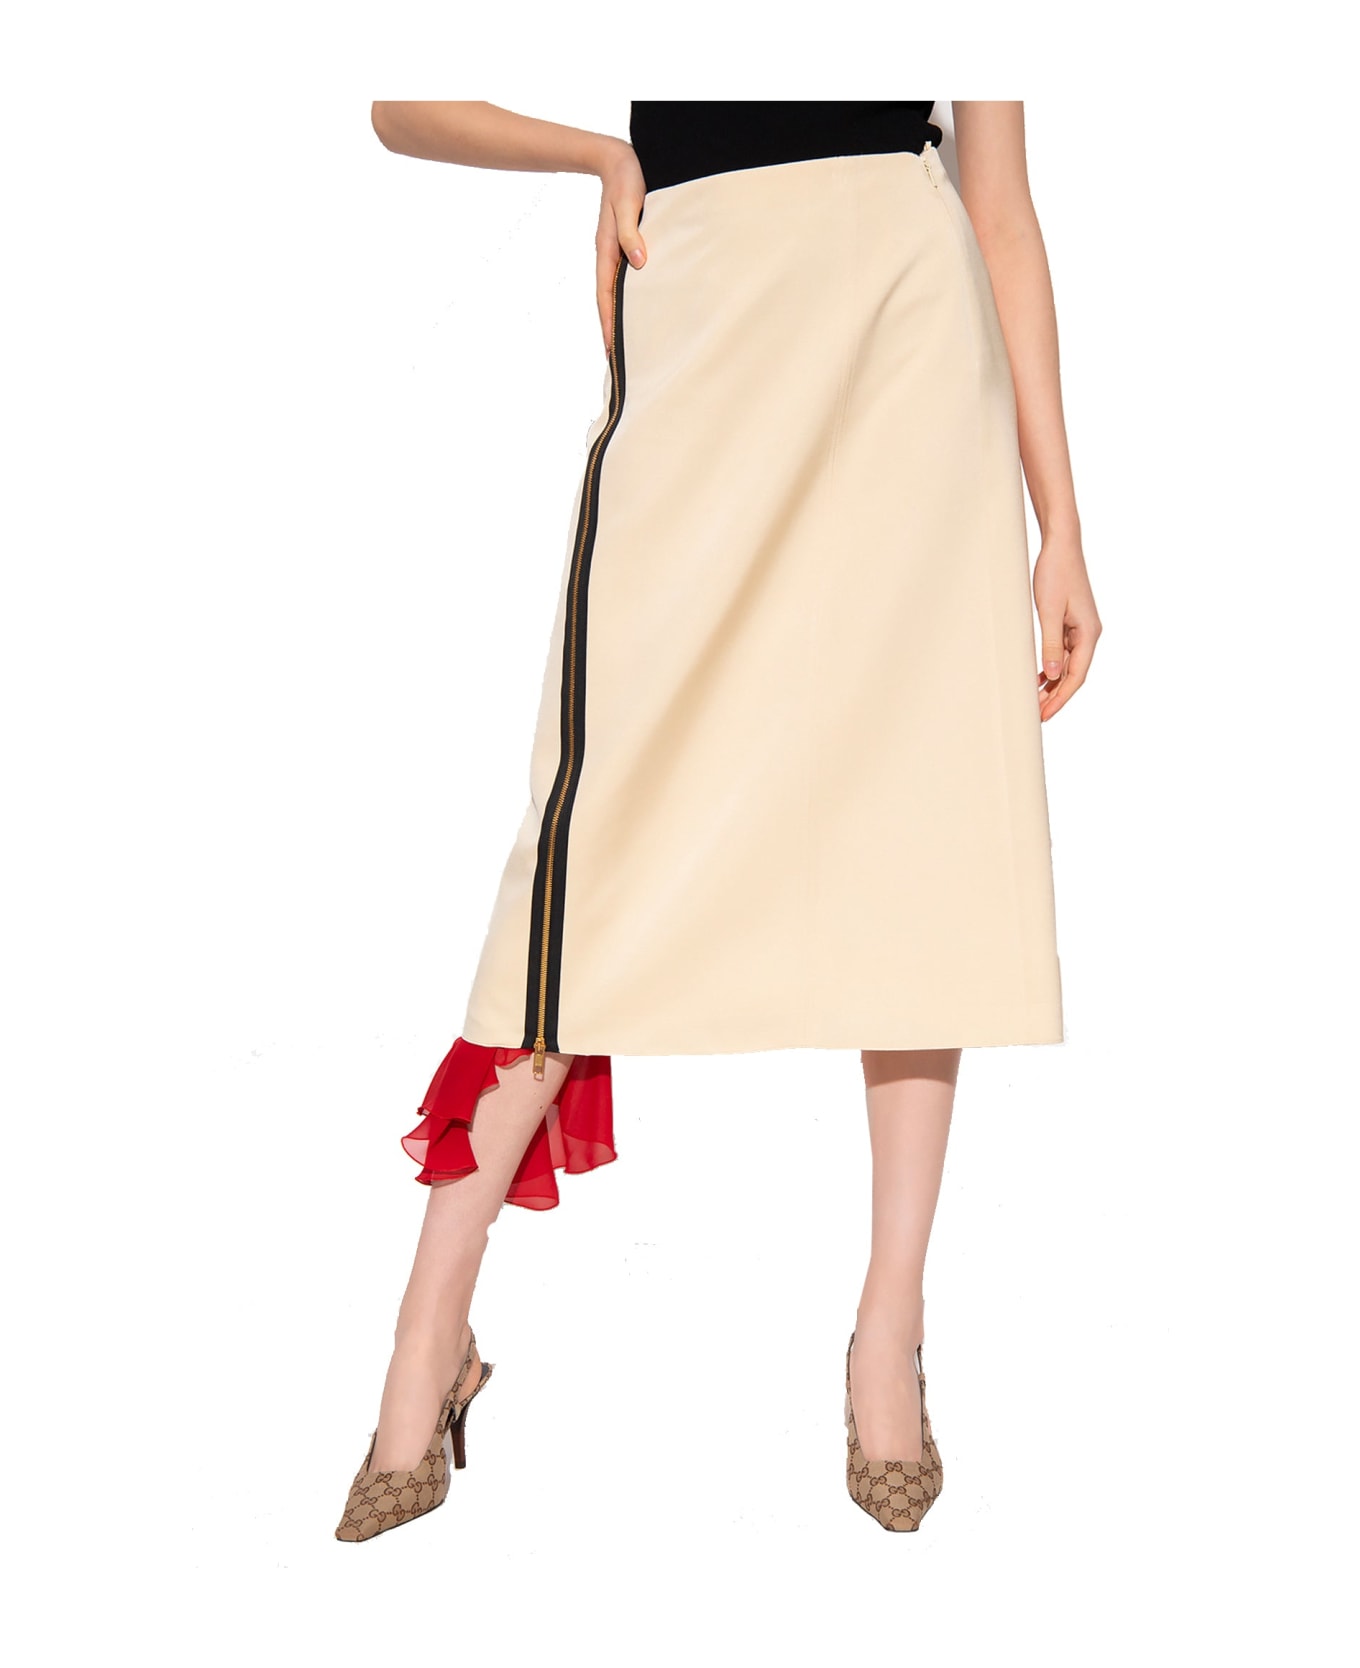 Gucci Silk Viscose Faille Skirt - Beige スカート